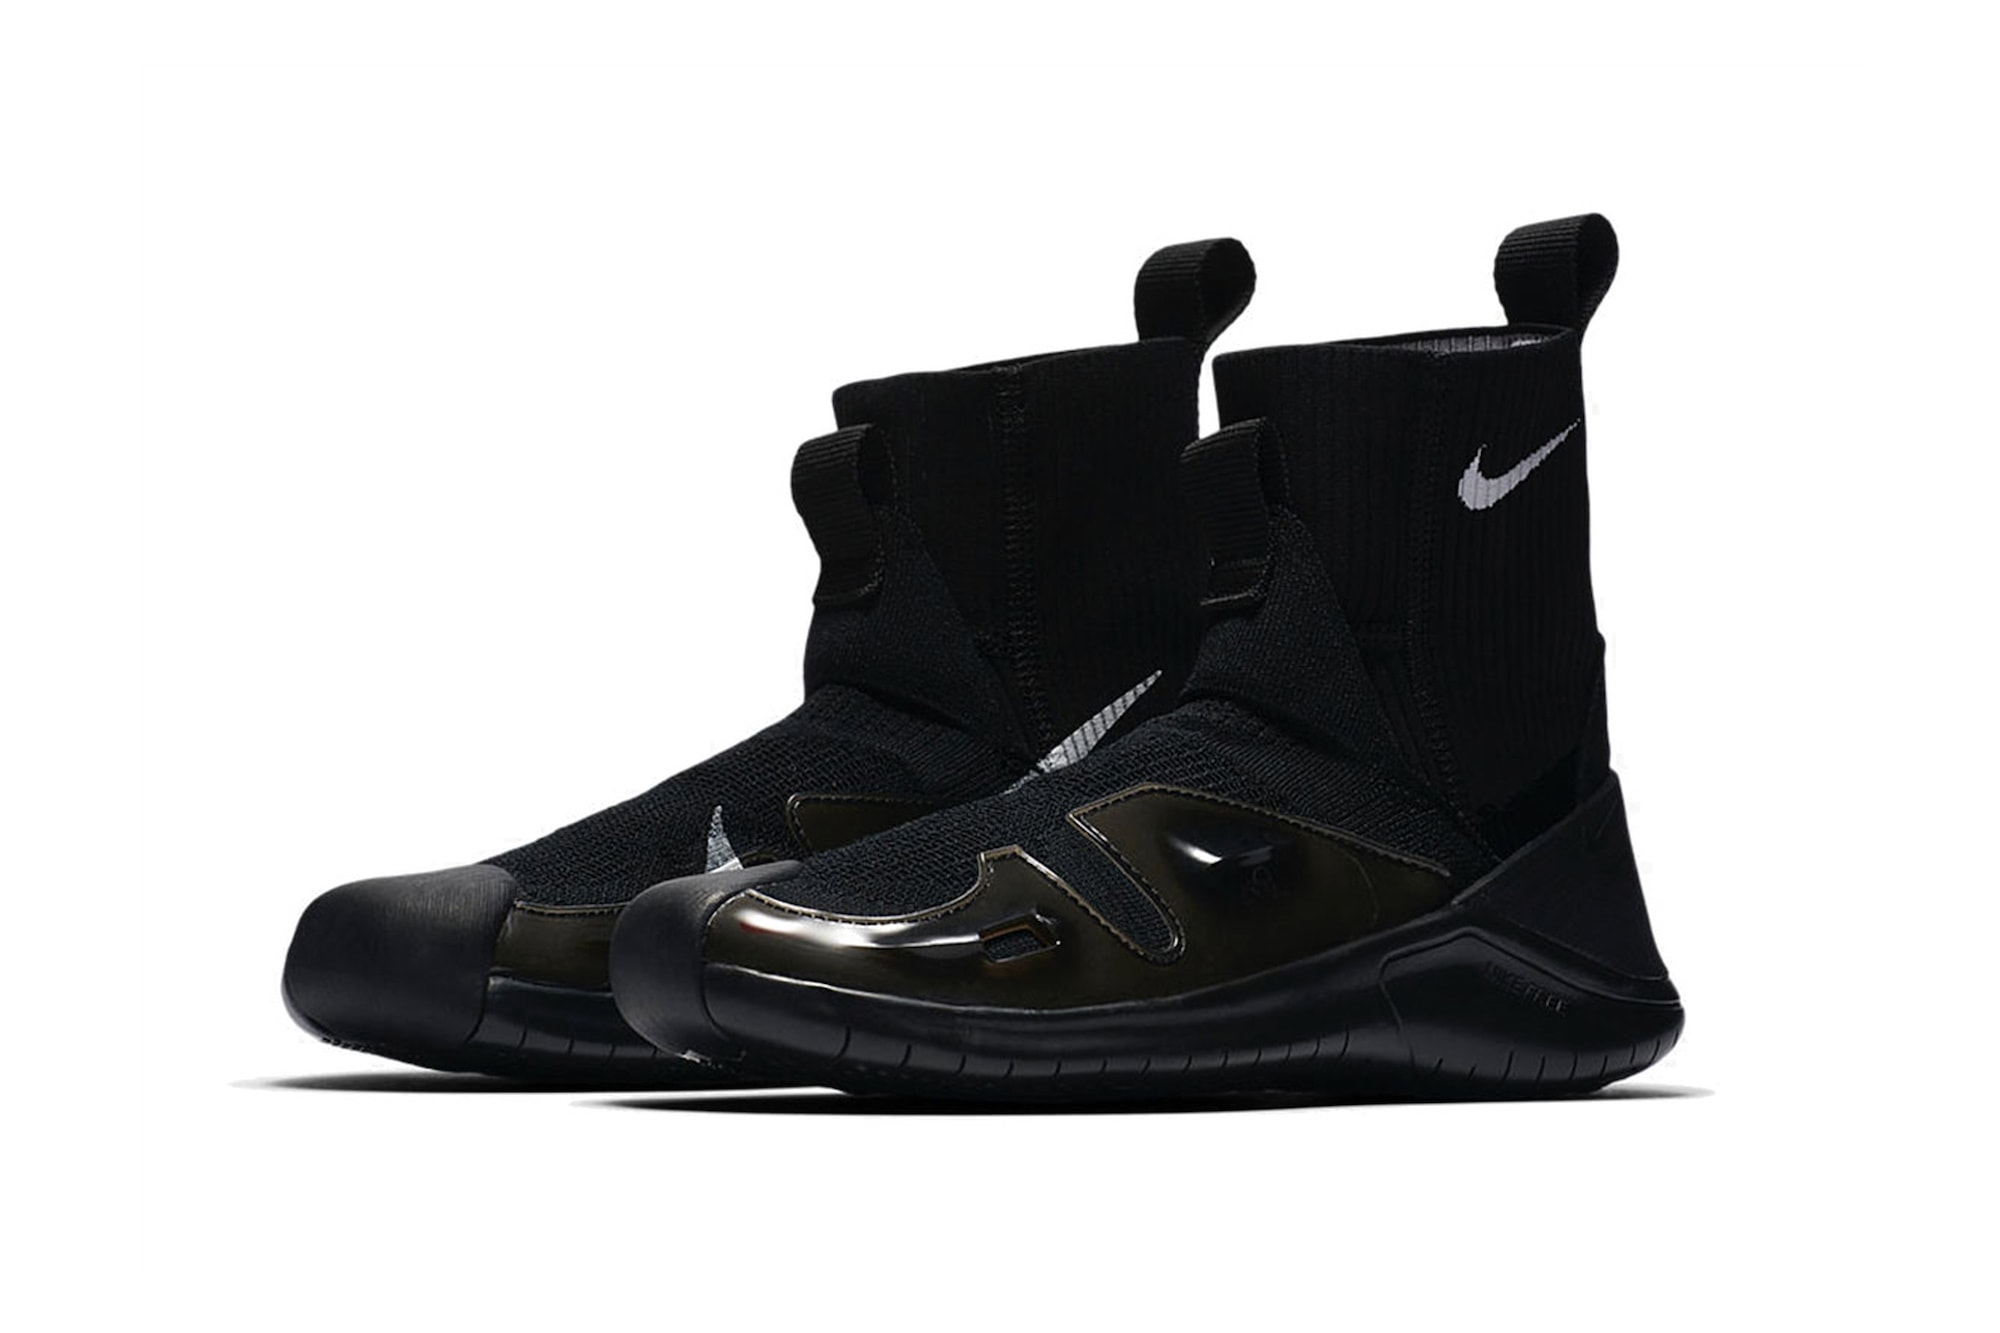 ALYX Nike Vibram Sock Sneaker Matthew Williams Black White First Look Logo Swoosh Detachable Sole Release Date